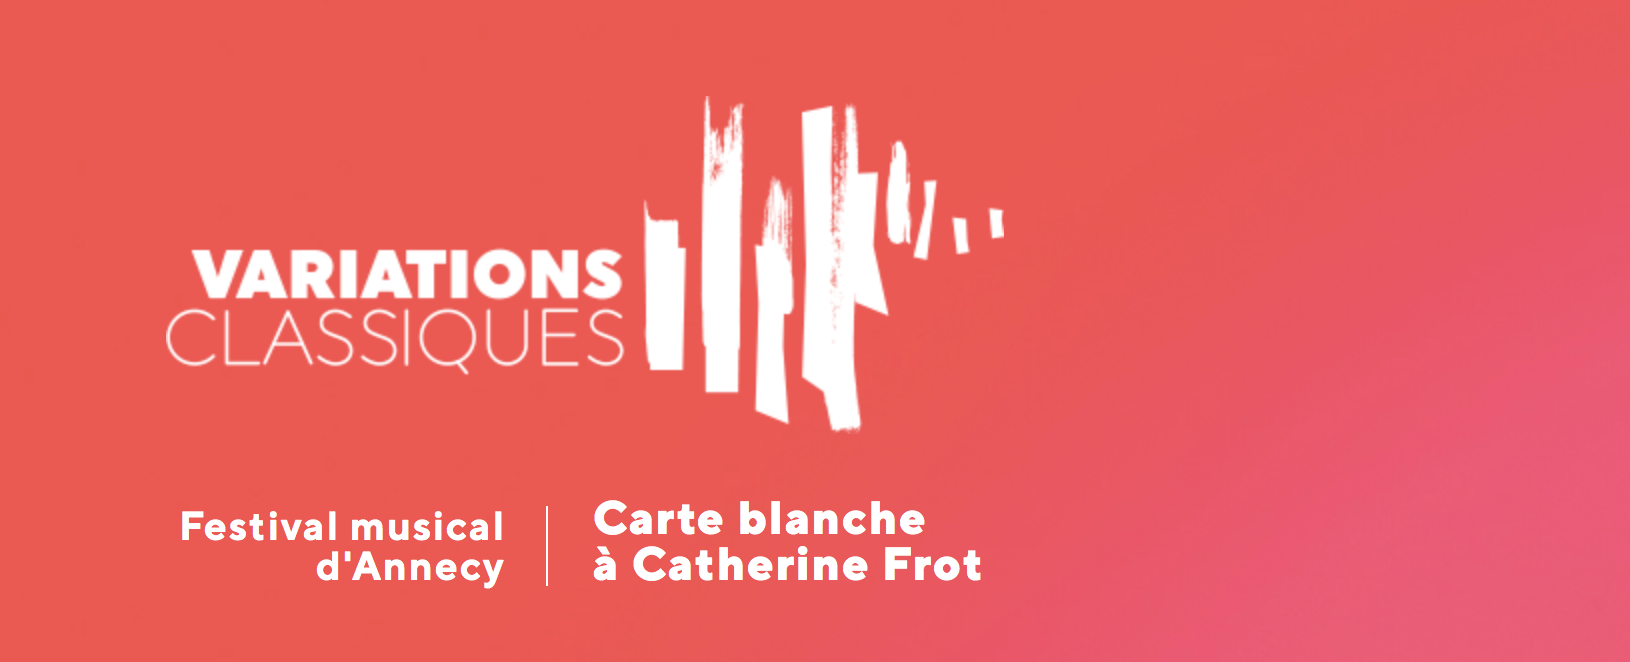 Carte blanche à Catherine Frot pour le premier Festival Variations Classiques.